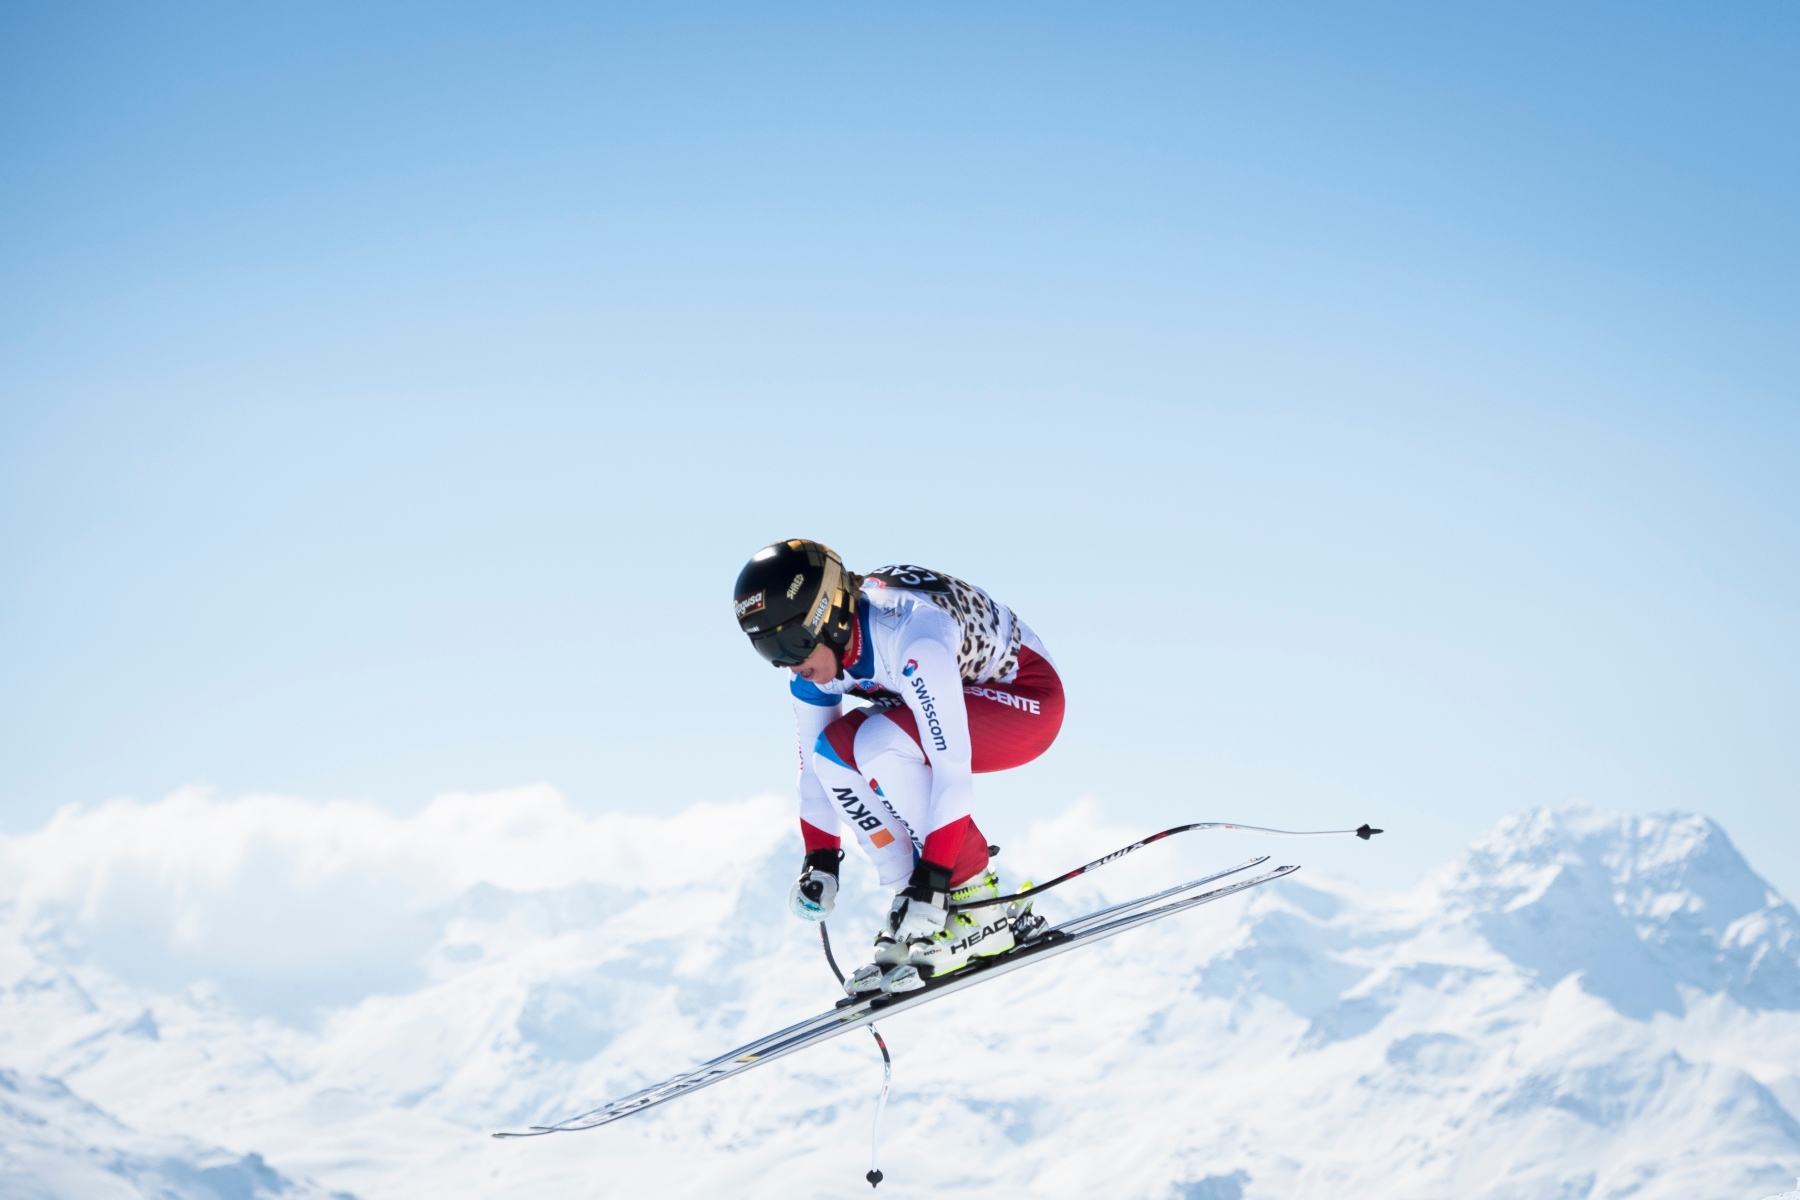 ZUM ERSTEN SCHWEIZER SKI ALPIN GESAMTWELTCUPSIEG VON LARA GUT SEIT VRENI SCHNEIDER 1995, STELLEN WIR IHNEN FOLGENDES BILDMATERIAL ZUR VERFUEGUNG - Lara Gut of Switzerland in action during the women's downhill training session at the FIS Alpine Ski World Cup Finals, in St. Moritz, Switzerland, Monday, March 14, 2016. (KEYSTONE/Gian Ehrenzeller) SKI ALPIN WELTCUP 2015/16 LARA GUT